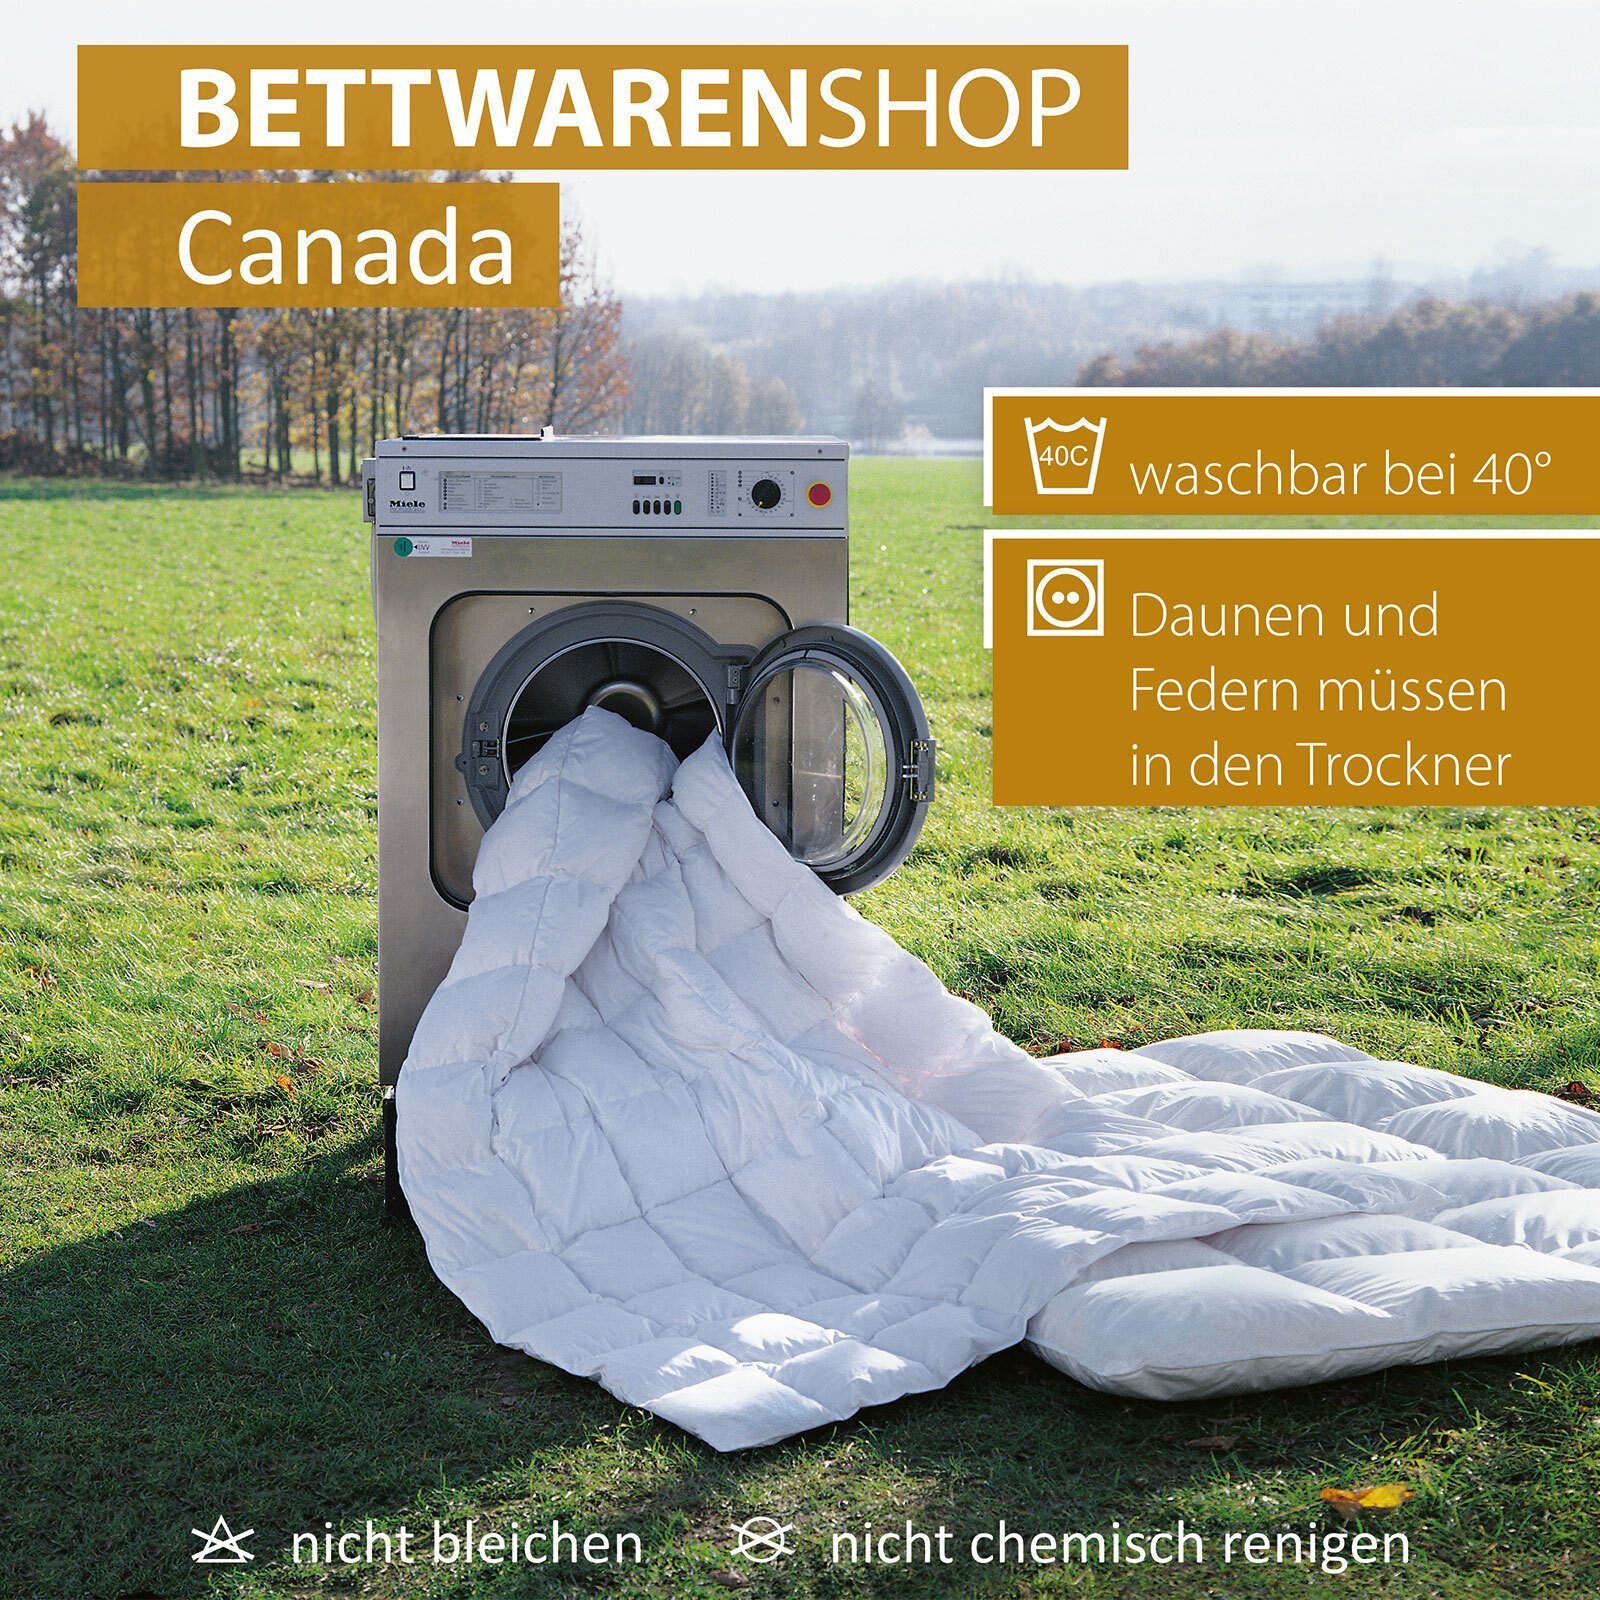 Daunenbettdecke, Canada, 100% weich Bezug: Daunen, und warm bauschig 100% kuschlig Baumwolle, Füllung: BETTWARENSHOP,